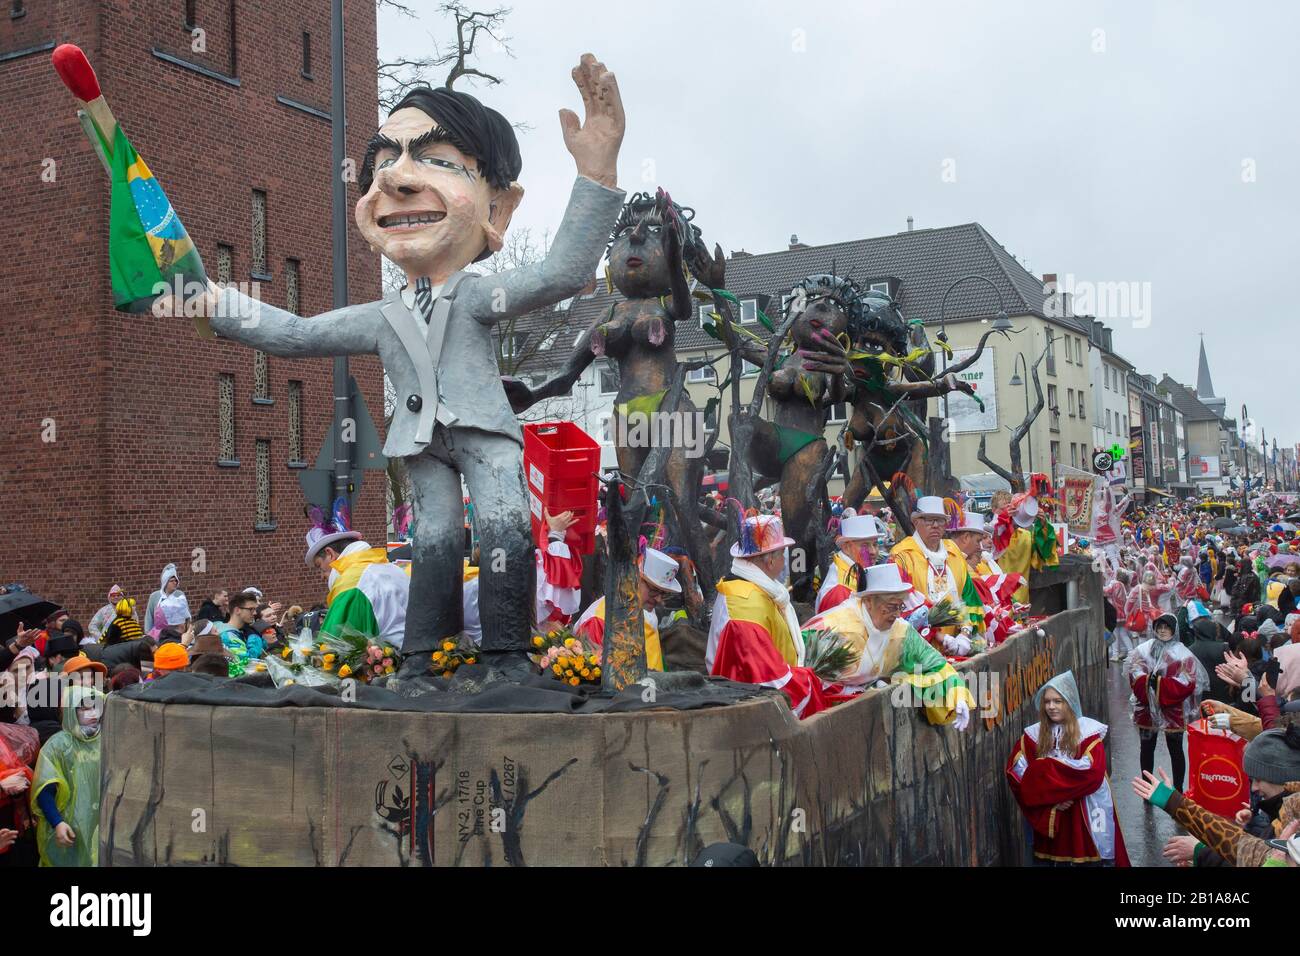 Karneval in Köln: Eine Kutsche zeigt den brasilianischen präsidenten Jair Bolsonaro, mit verbranntem Regenwald und verkohlten Samba-Tänzern zurückgelassen Stockfoto